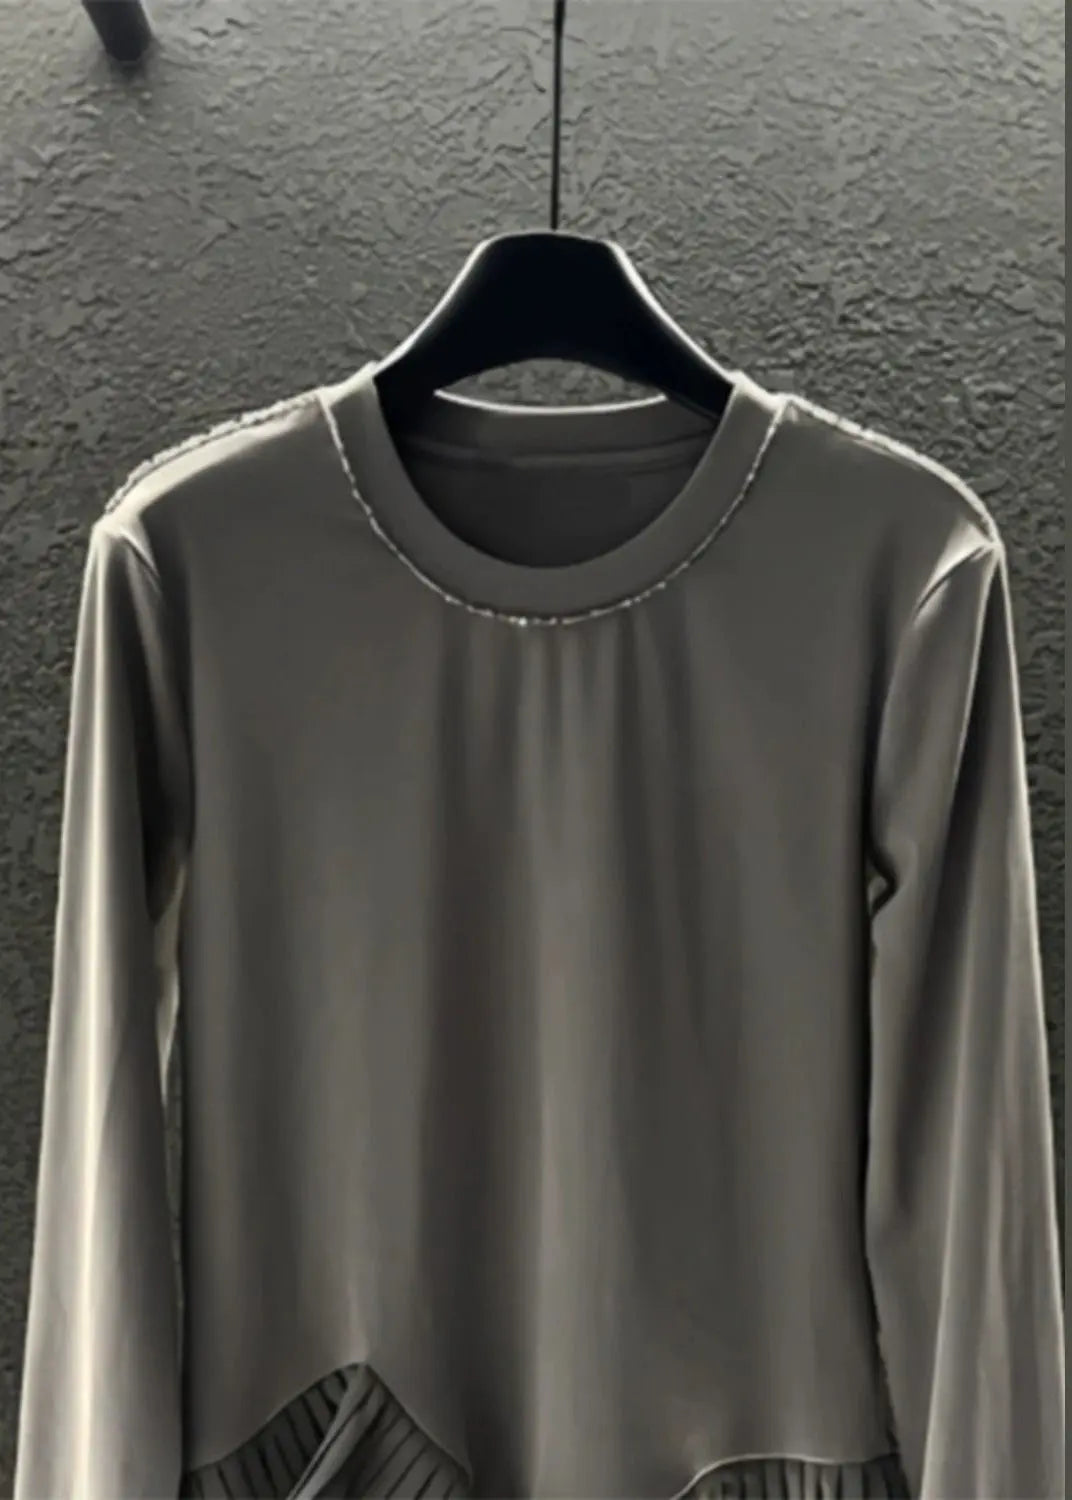 DIY Grey Asymmetrical Patchwork Wrinkled Cotton Sweatshirts Top Spring Ada Fashion